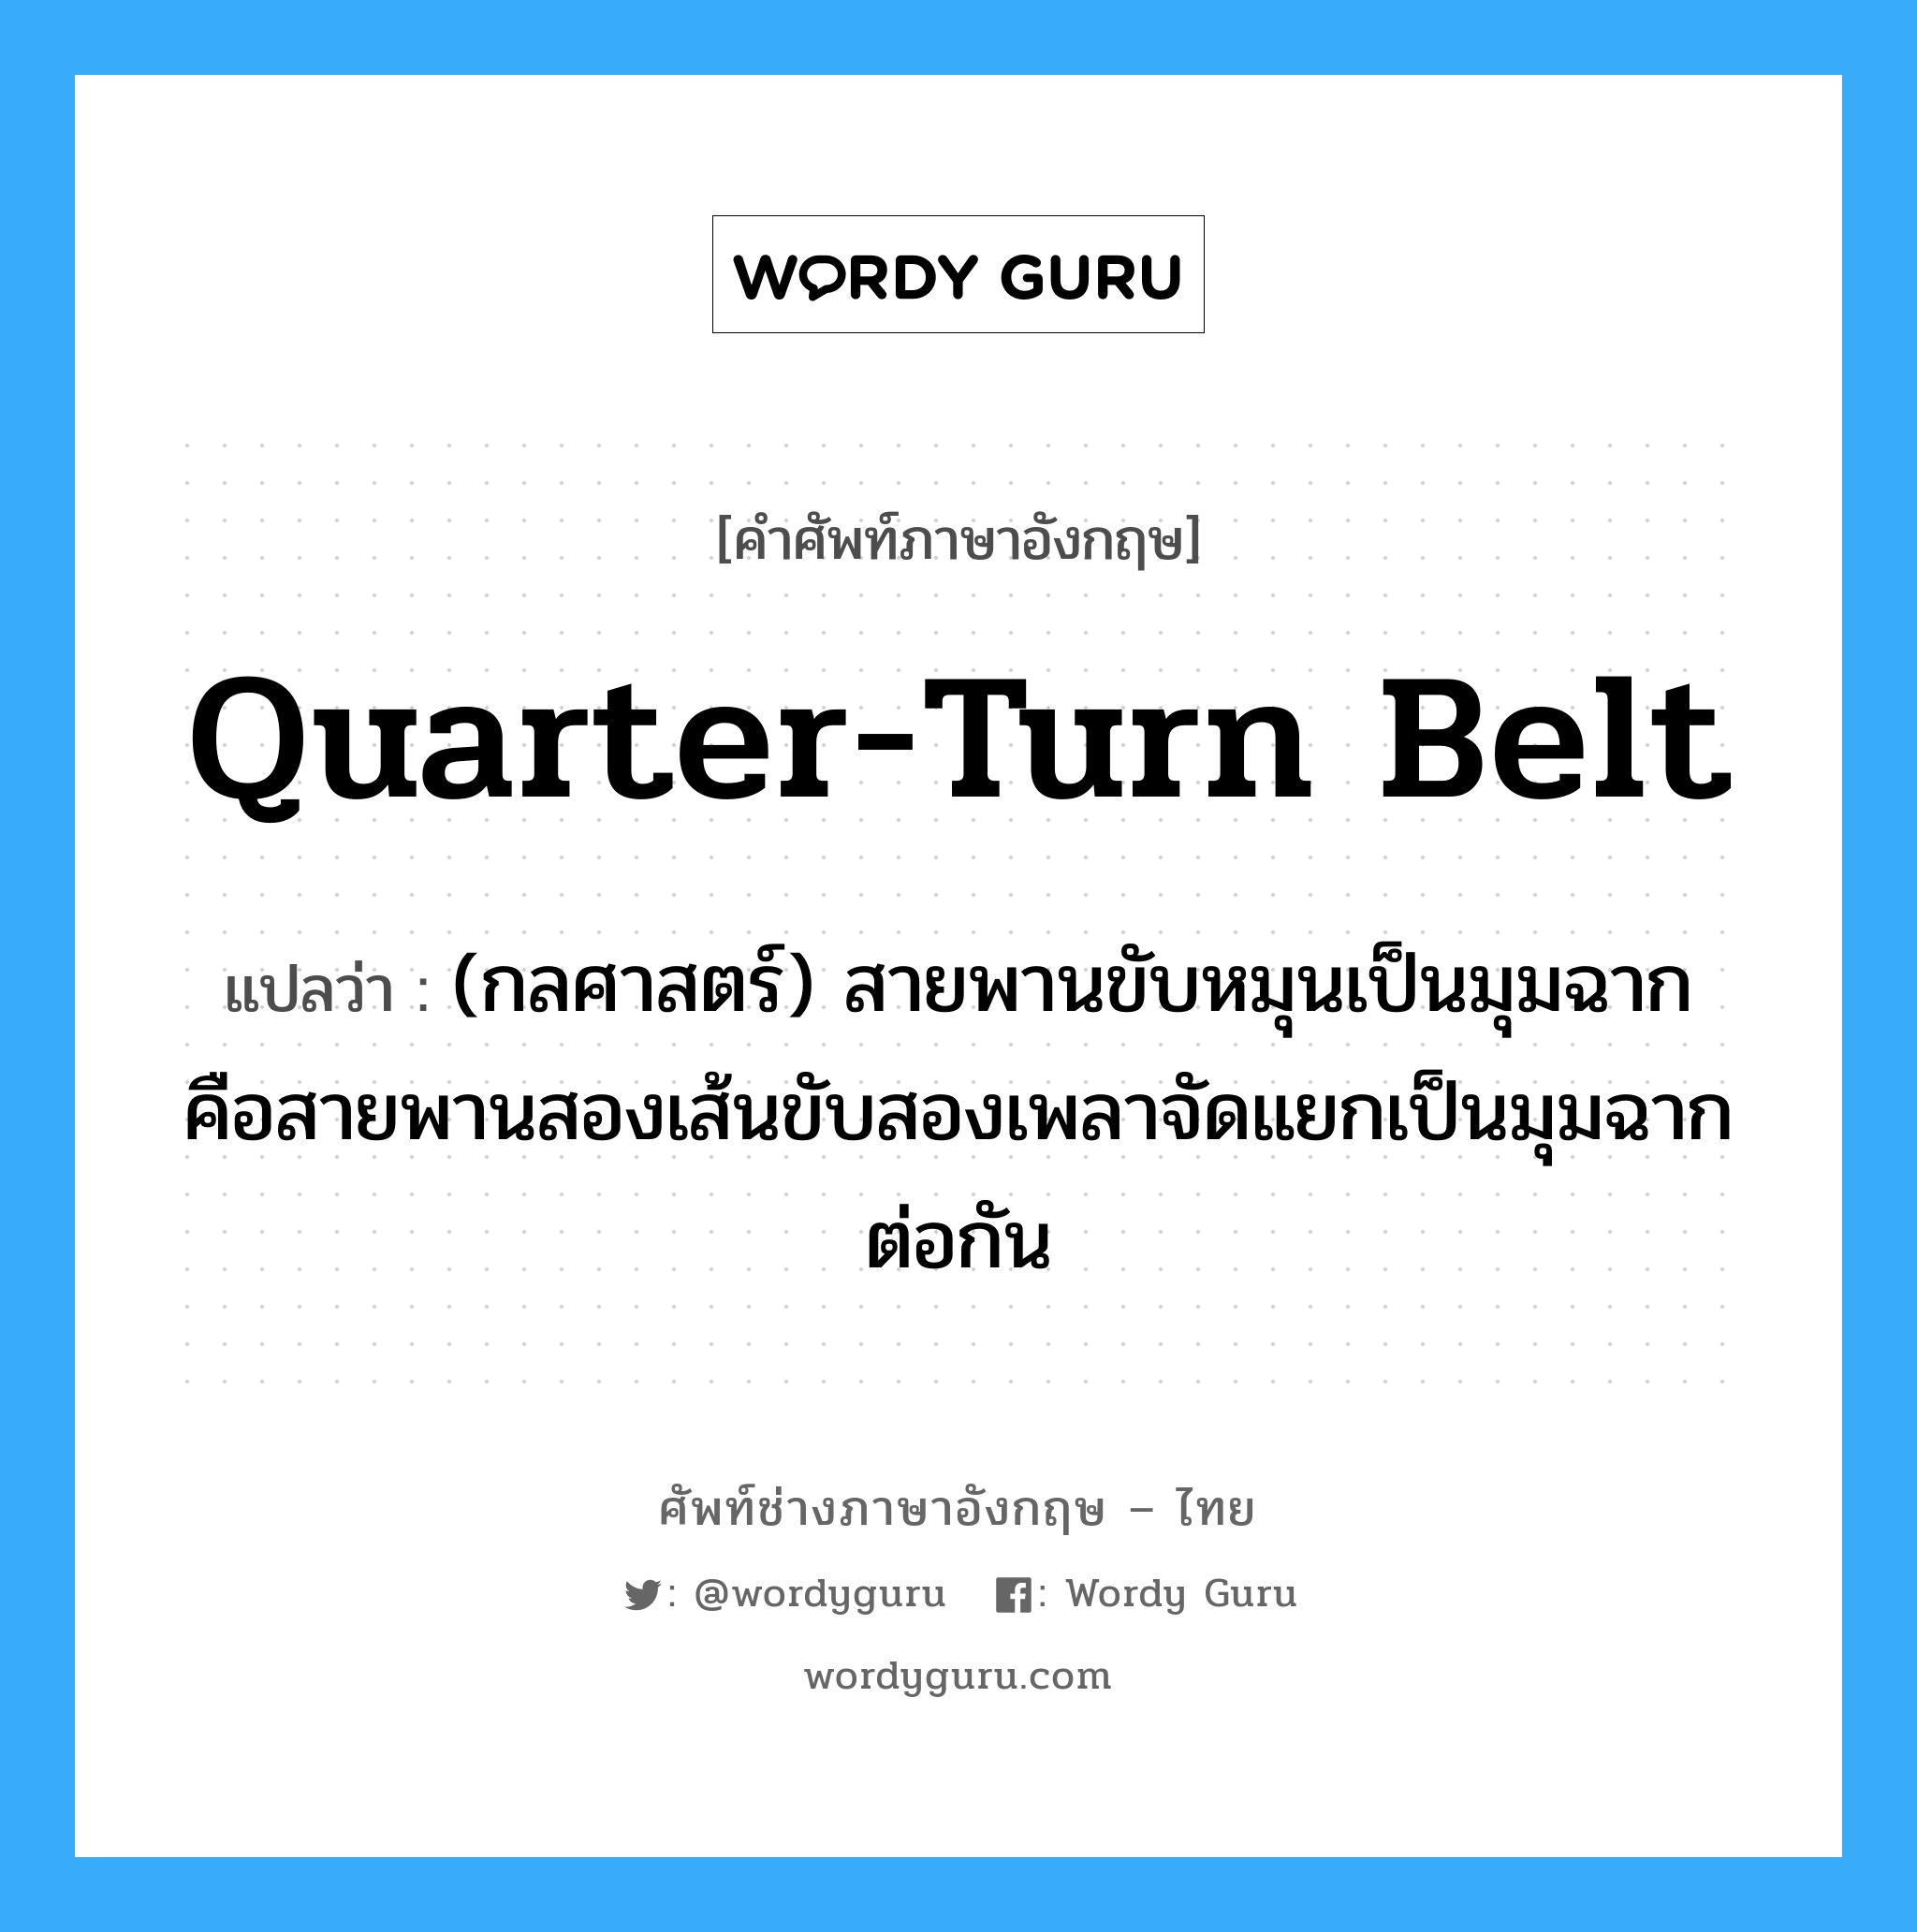 quarter-turn belt แปลว่า?, คำศัพท์ช่างภาษาอังกฤษ - ไทย quarter-turn belt คำศัพท์ภาษาอังกฤษ quarter-turn belt แปลว่า (กลศาสตร์) สายพานขับหมุนเป็นมุมฉาก คือสายพานสองเส้นขับสองเพลาจัดแยกเป็นมุมฉากต่อกัน